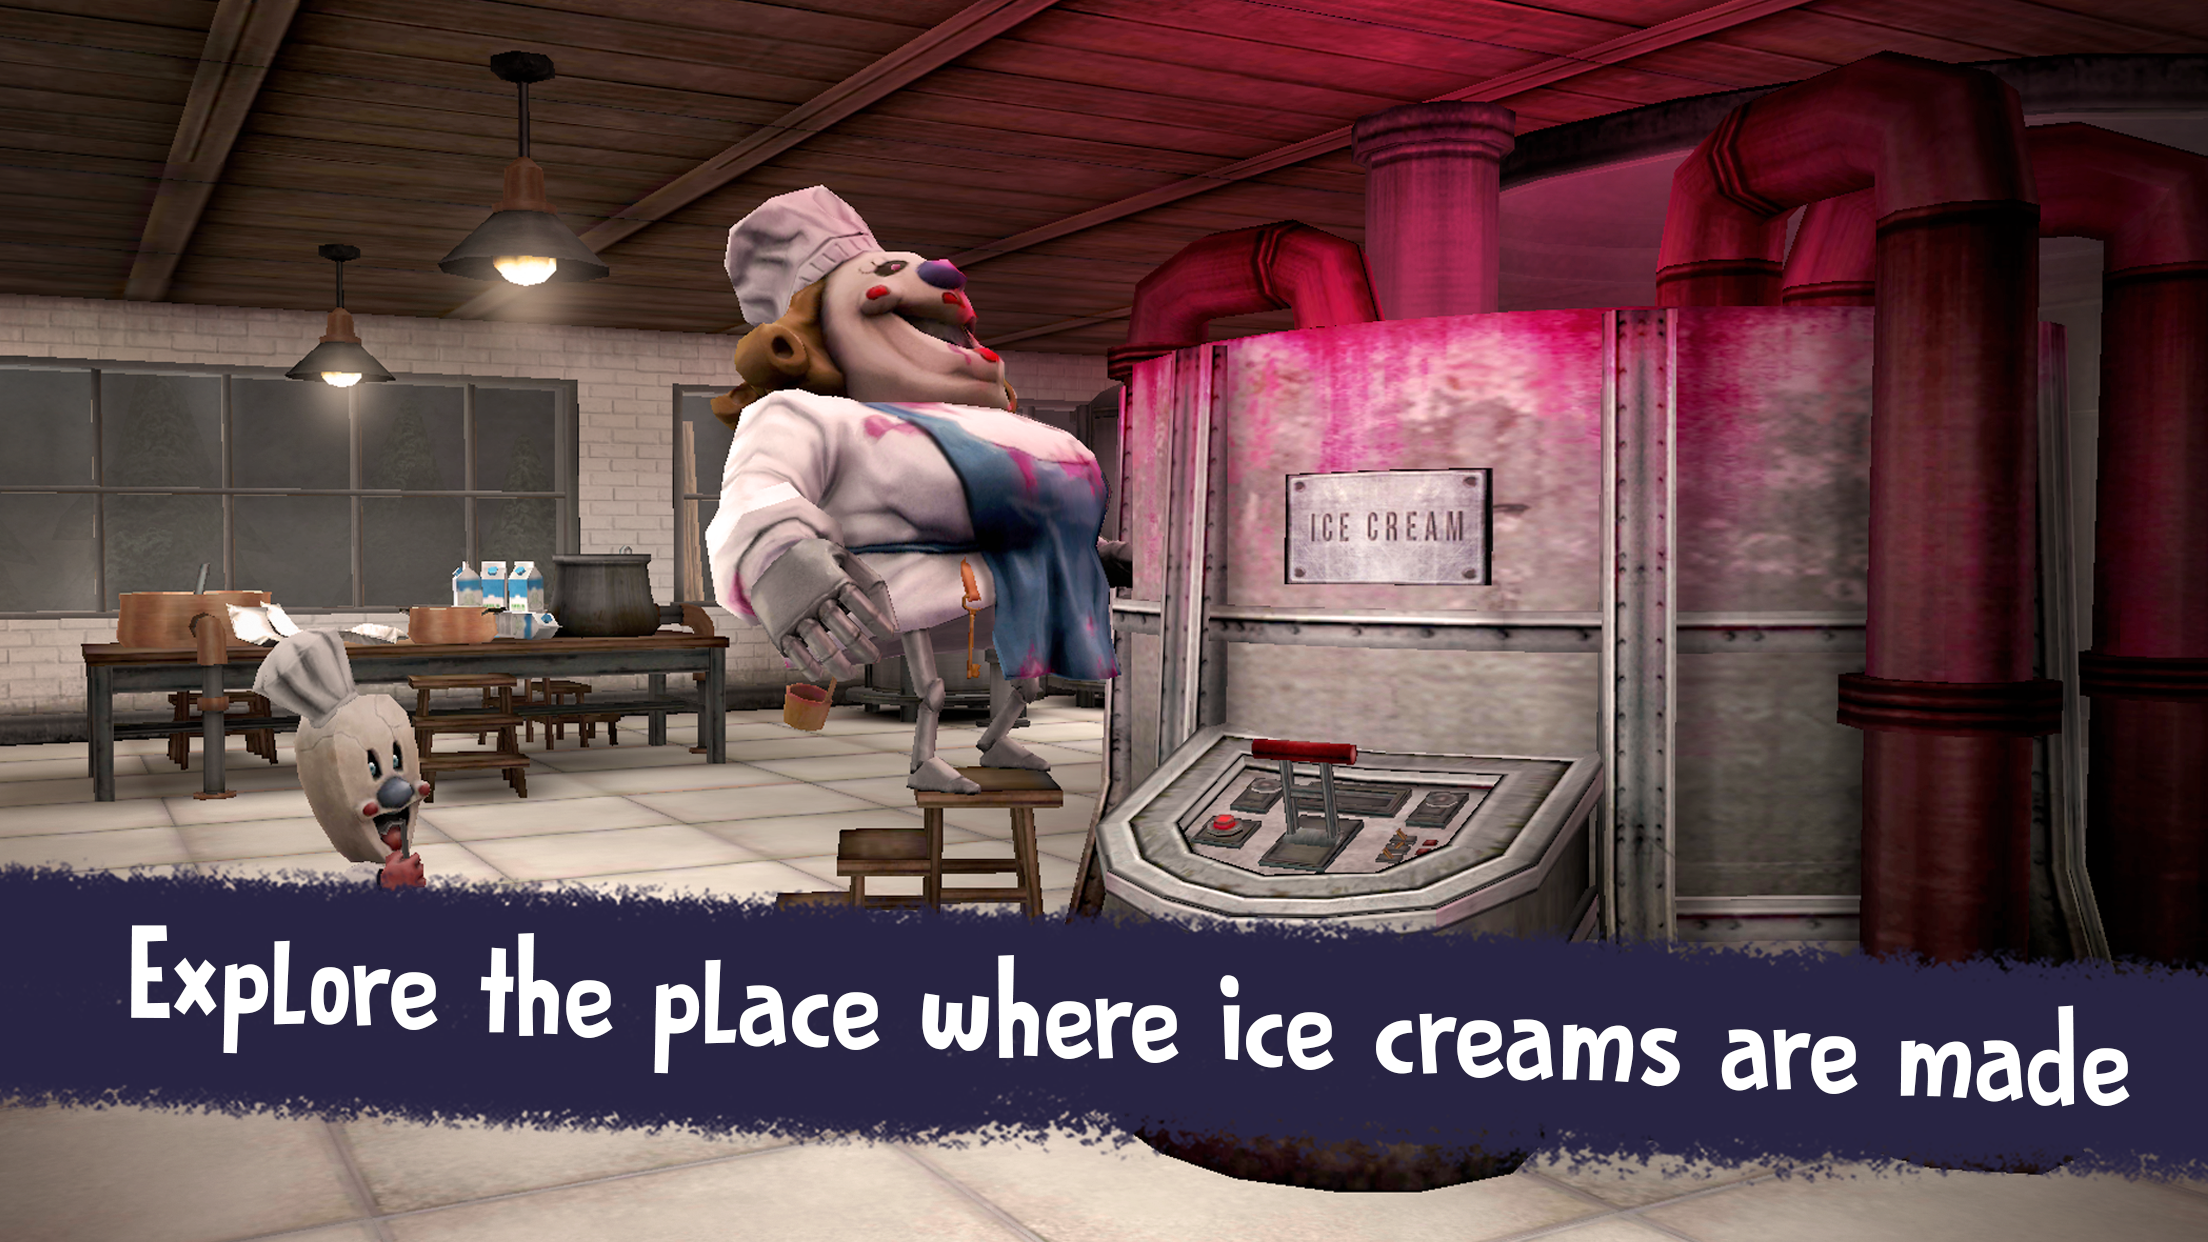 Ice Scream Horror em Jogos na Internet